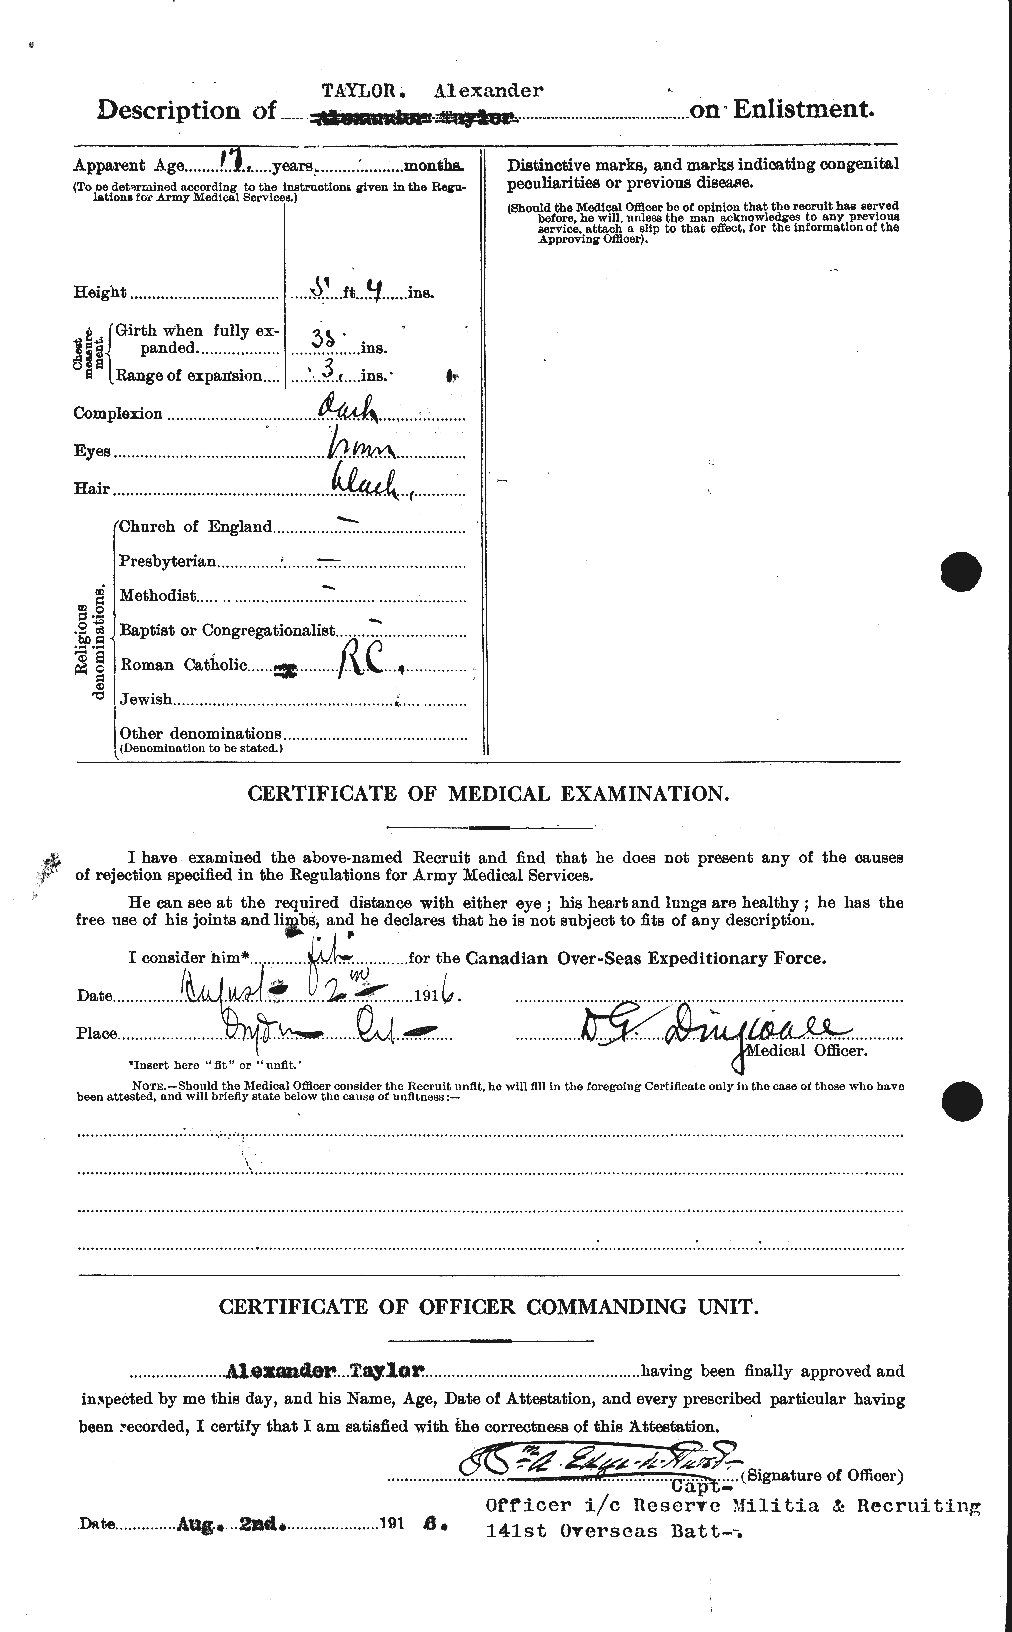 Dossiers du Personnel de la Première Guerre mondiale - CEC 626146b